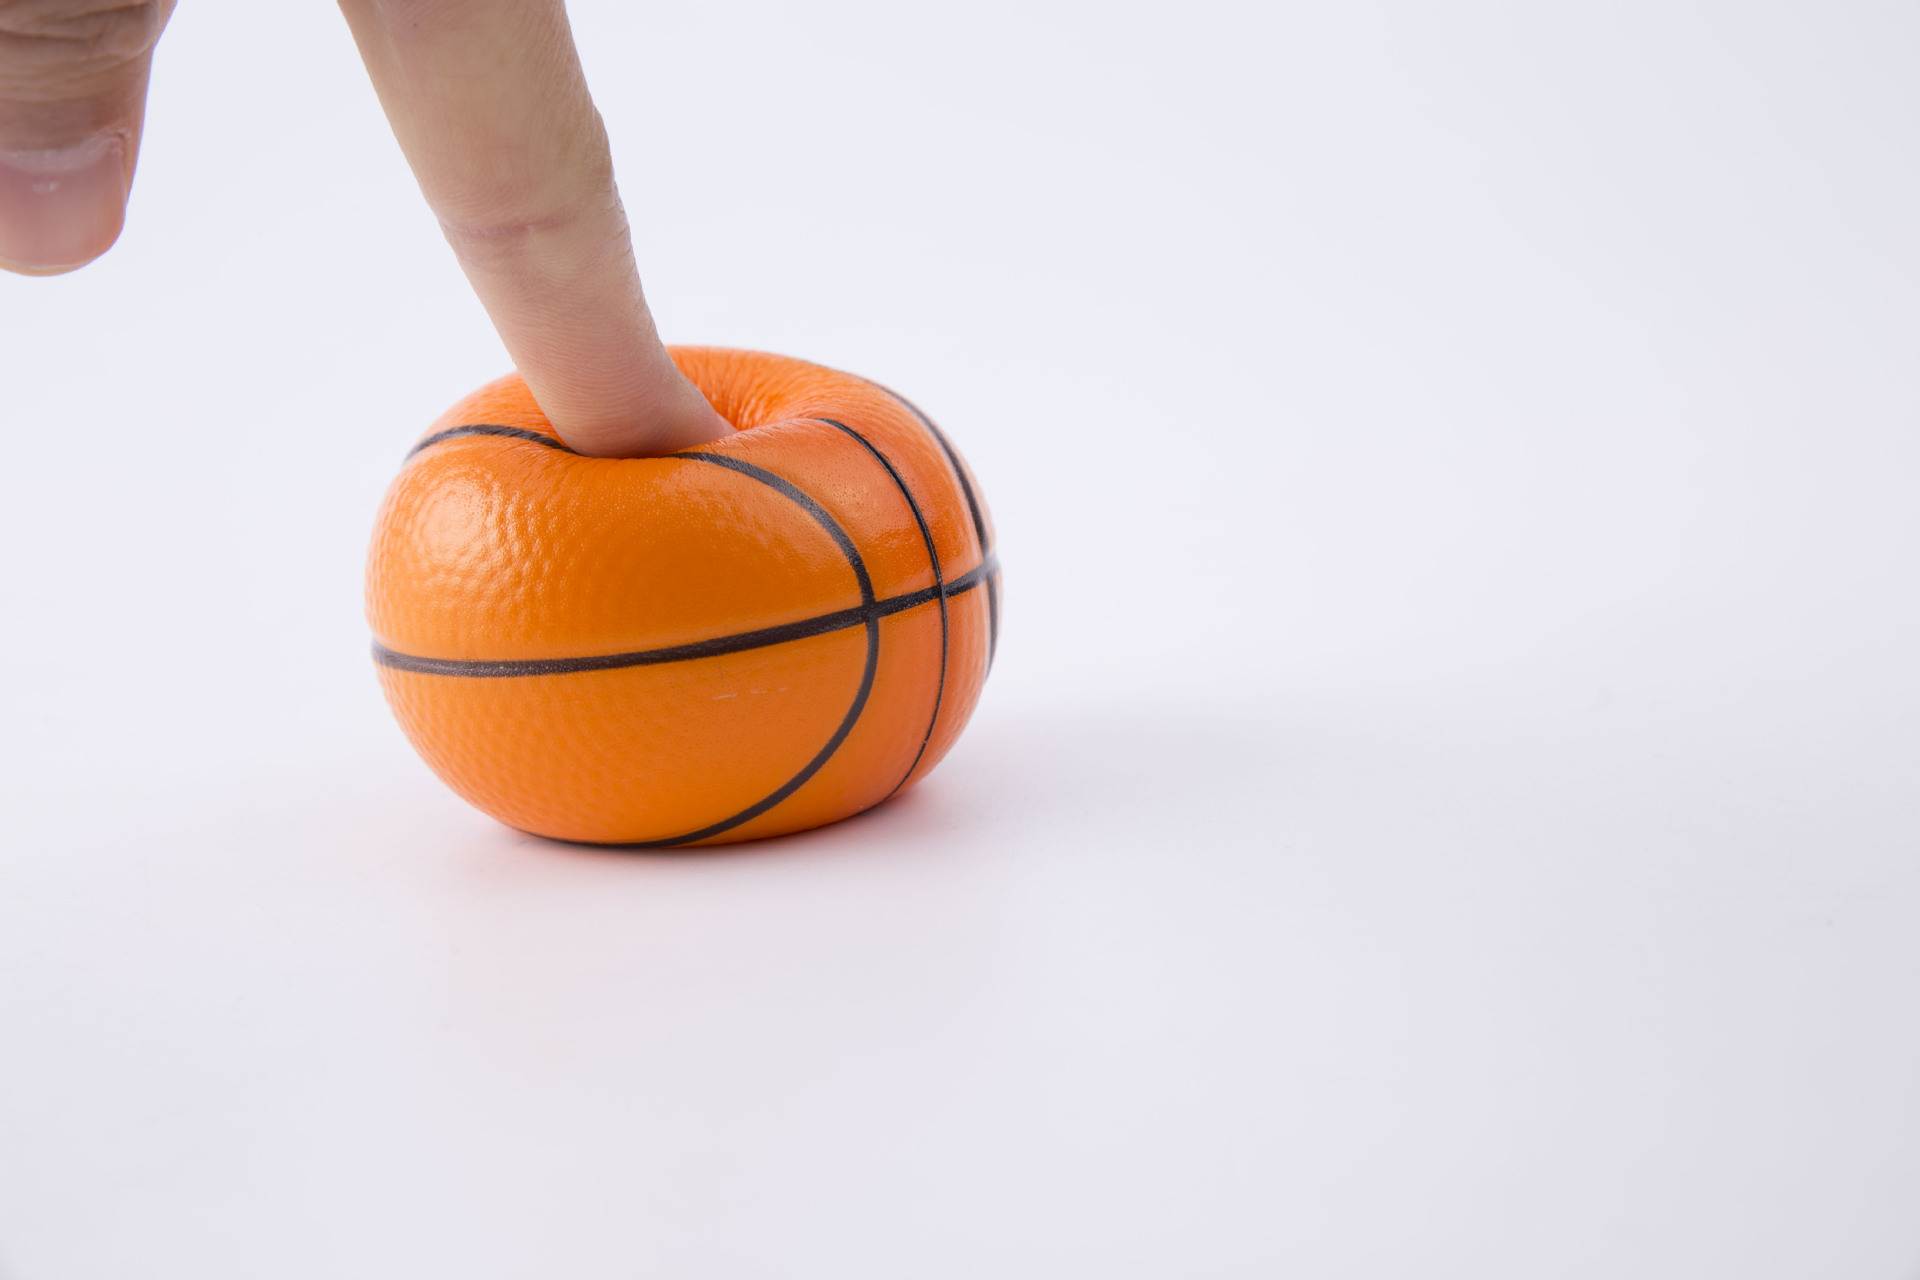 地摊热卖pu发泡玩具篮球10cm定制摄影拍照道具泡沫足球儿童玩具球详情14